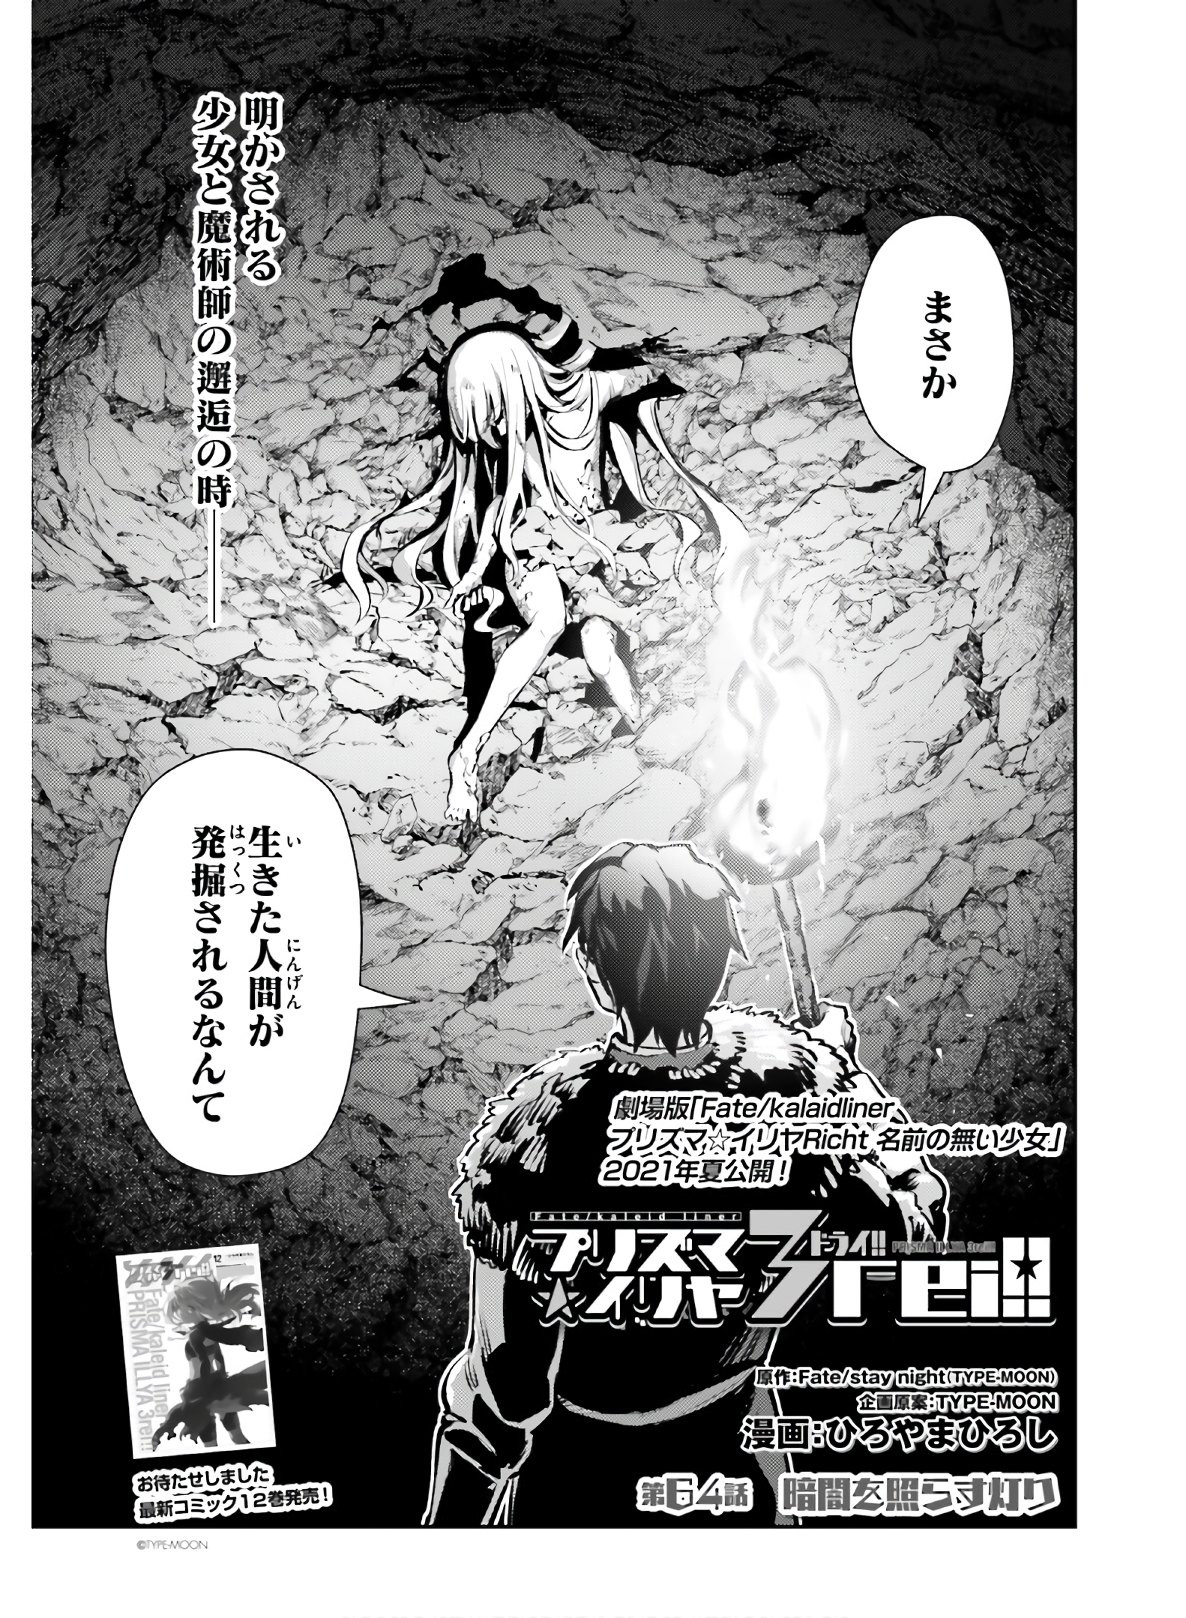 Fate/Kaleid Liner Prisma Illya Drei! - Chapter 64 - Page 3 / Raw | Sen Manga